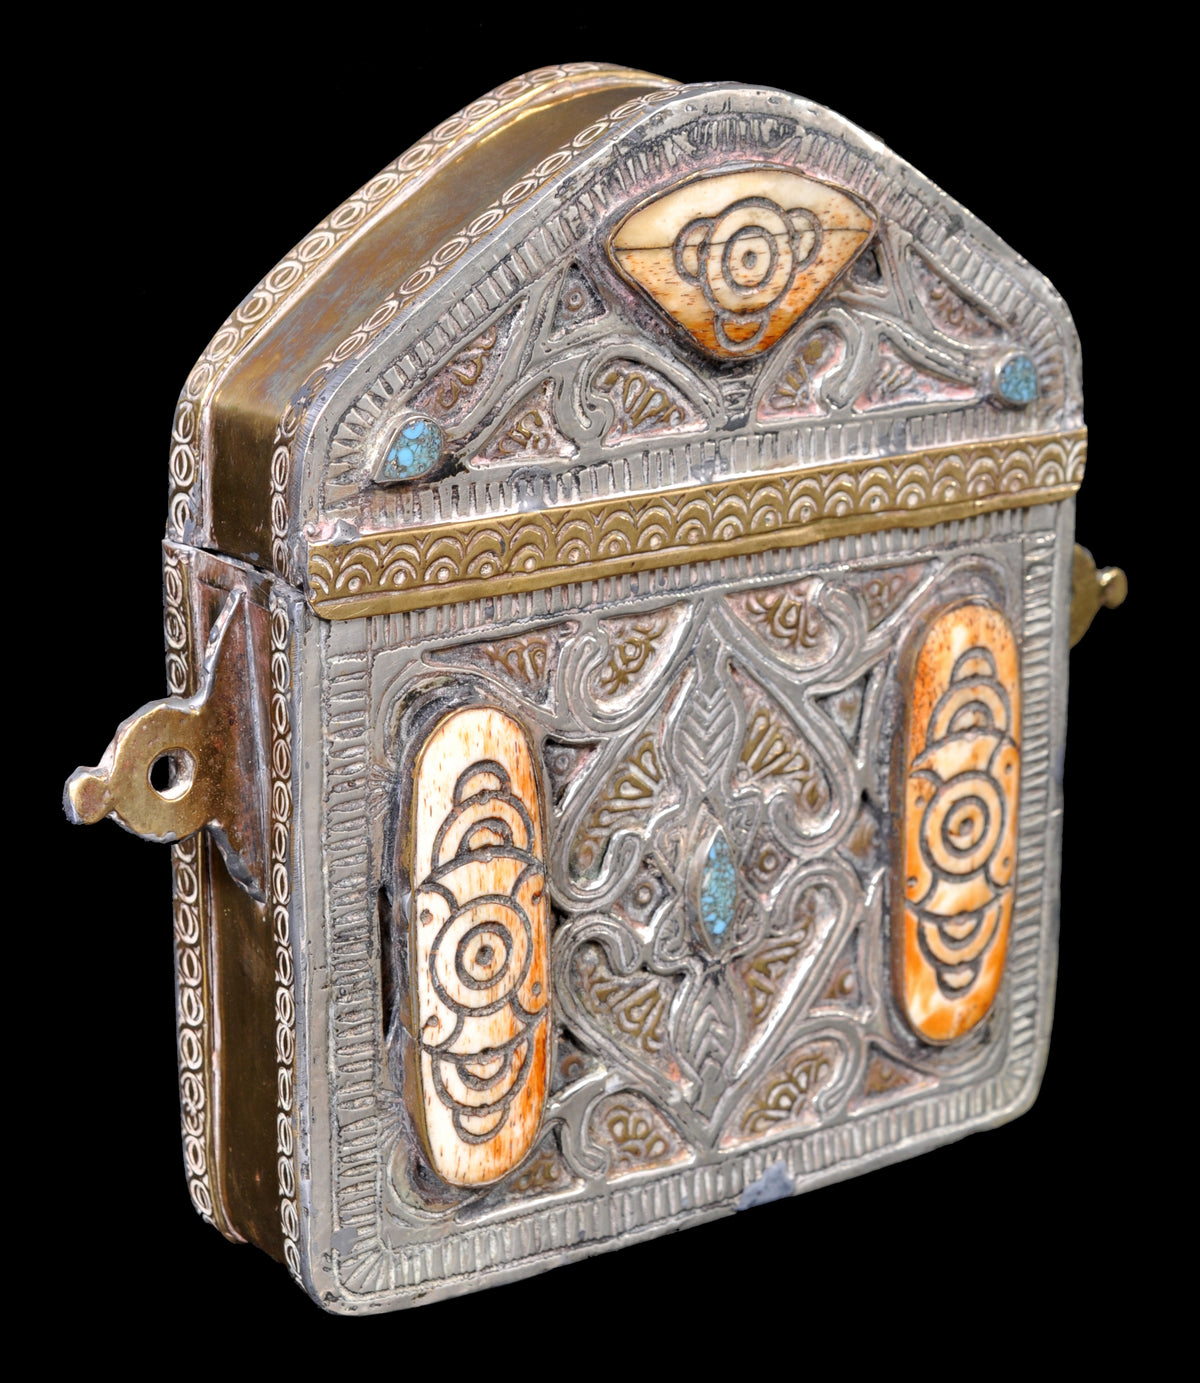 Antique 19th Century Islamic Brass & Silver Inlaid Koran/Qur'an Case, circa 1890